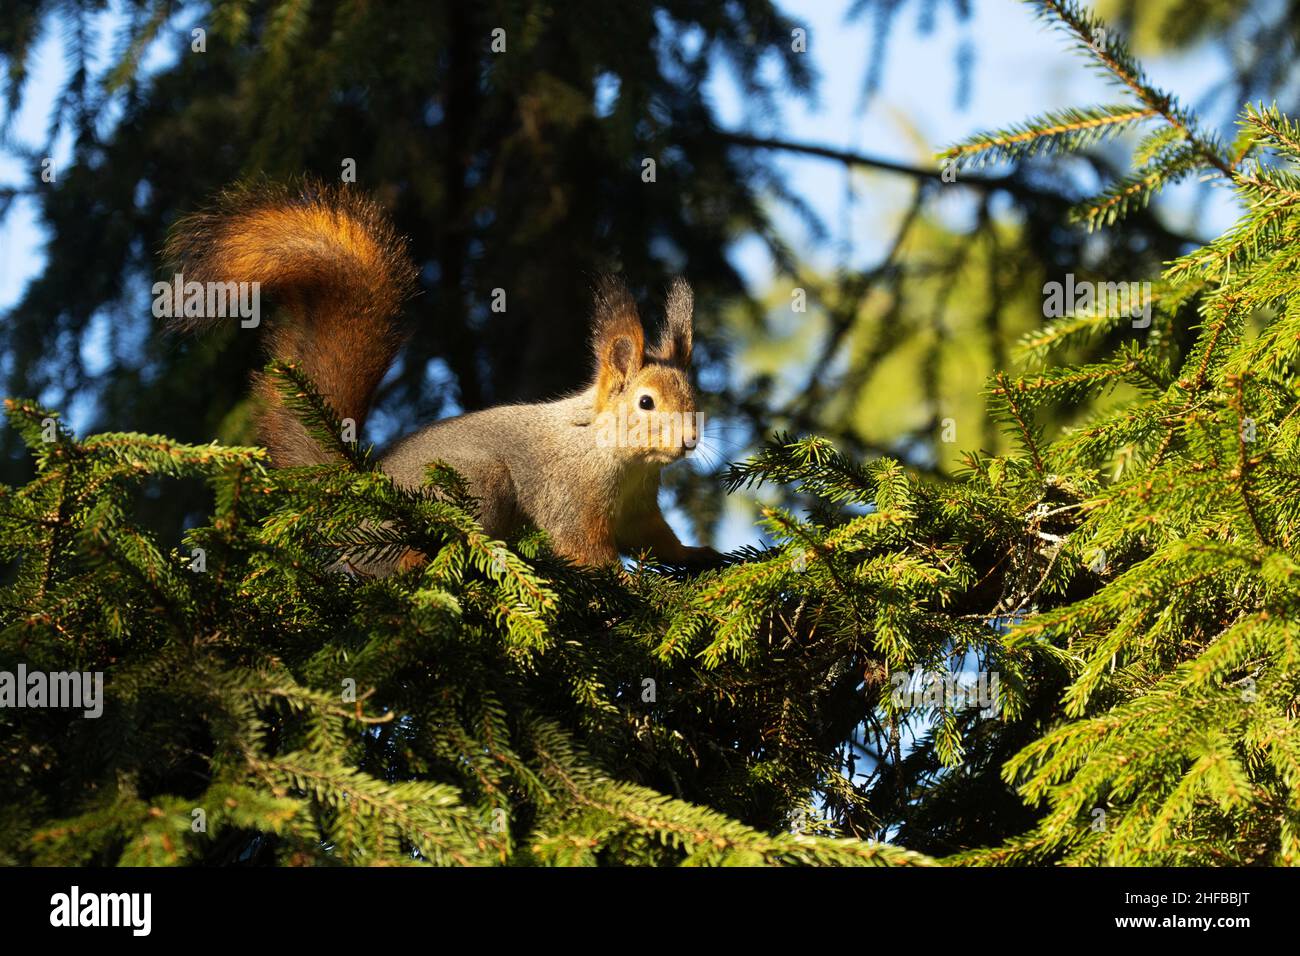 Écureuil roux, Sciurus vulgaris, à la tête d'un intrus provenant de branches de l'épinette pendant une soirée d'automne ensoleillée dans une forêt boréale. Banque D'Images